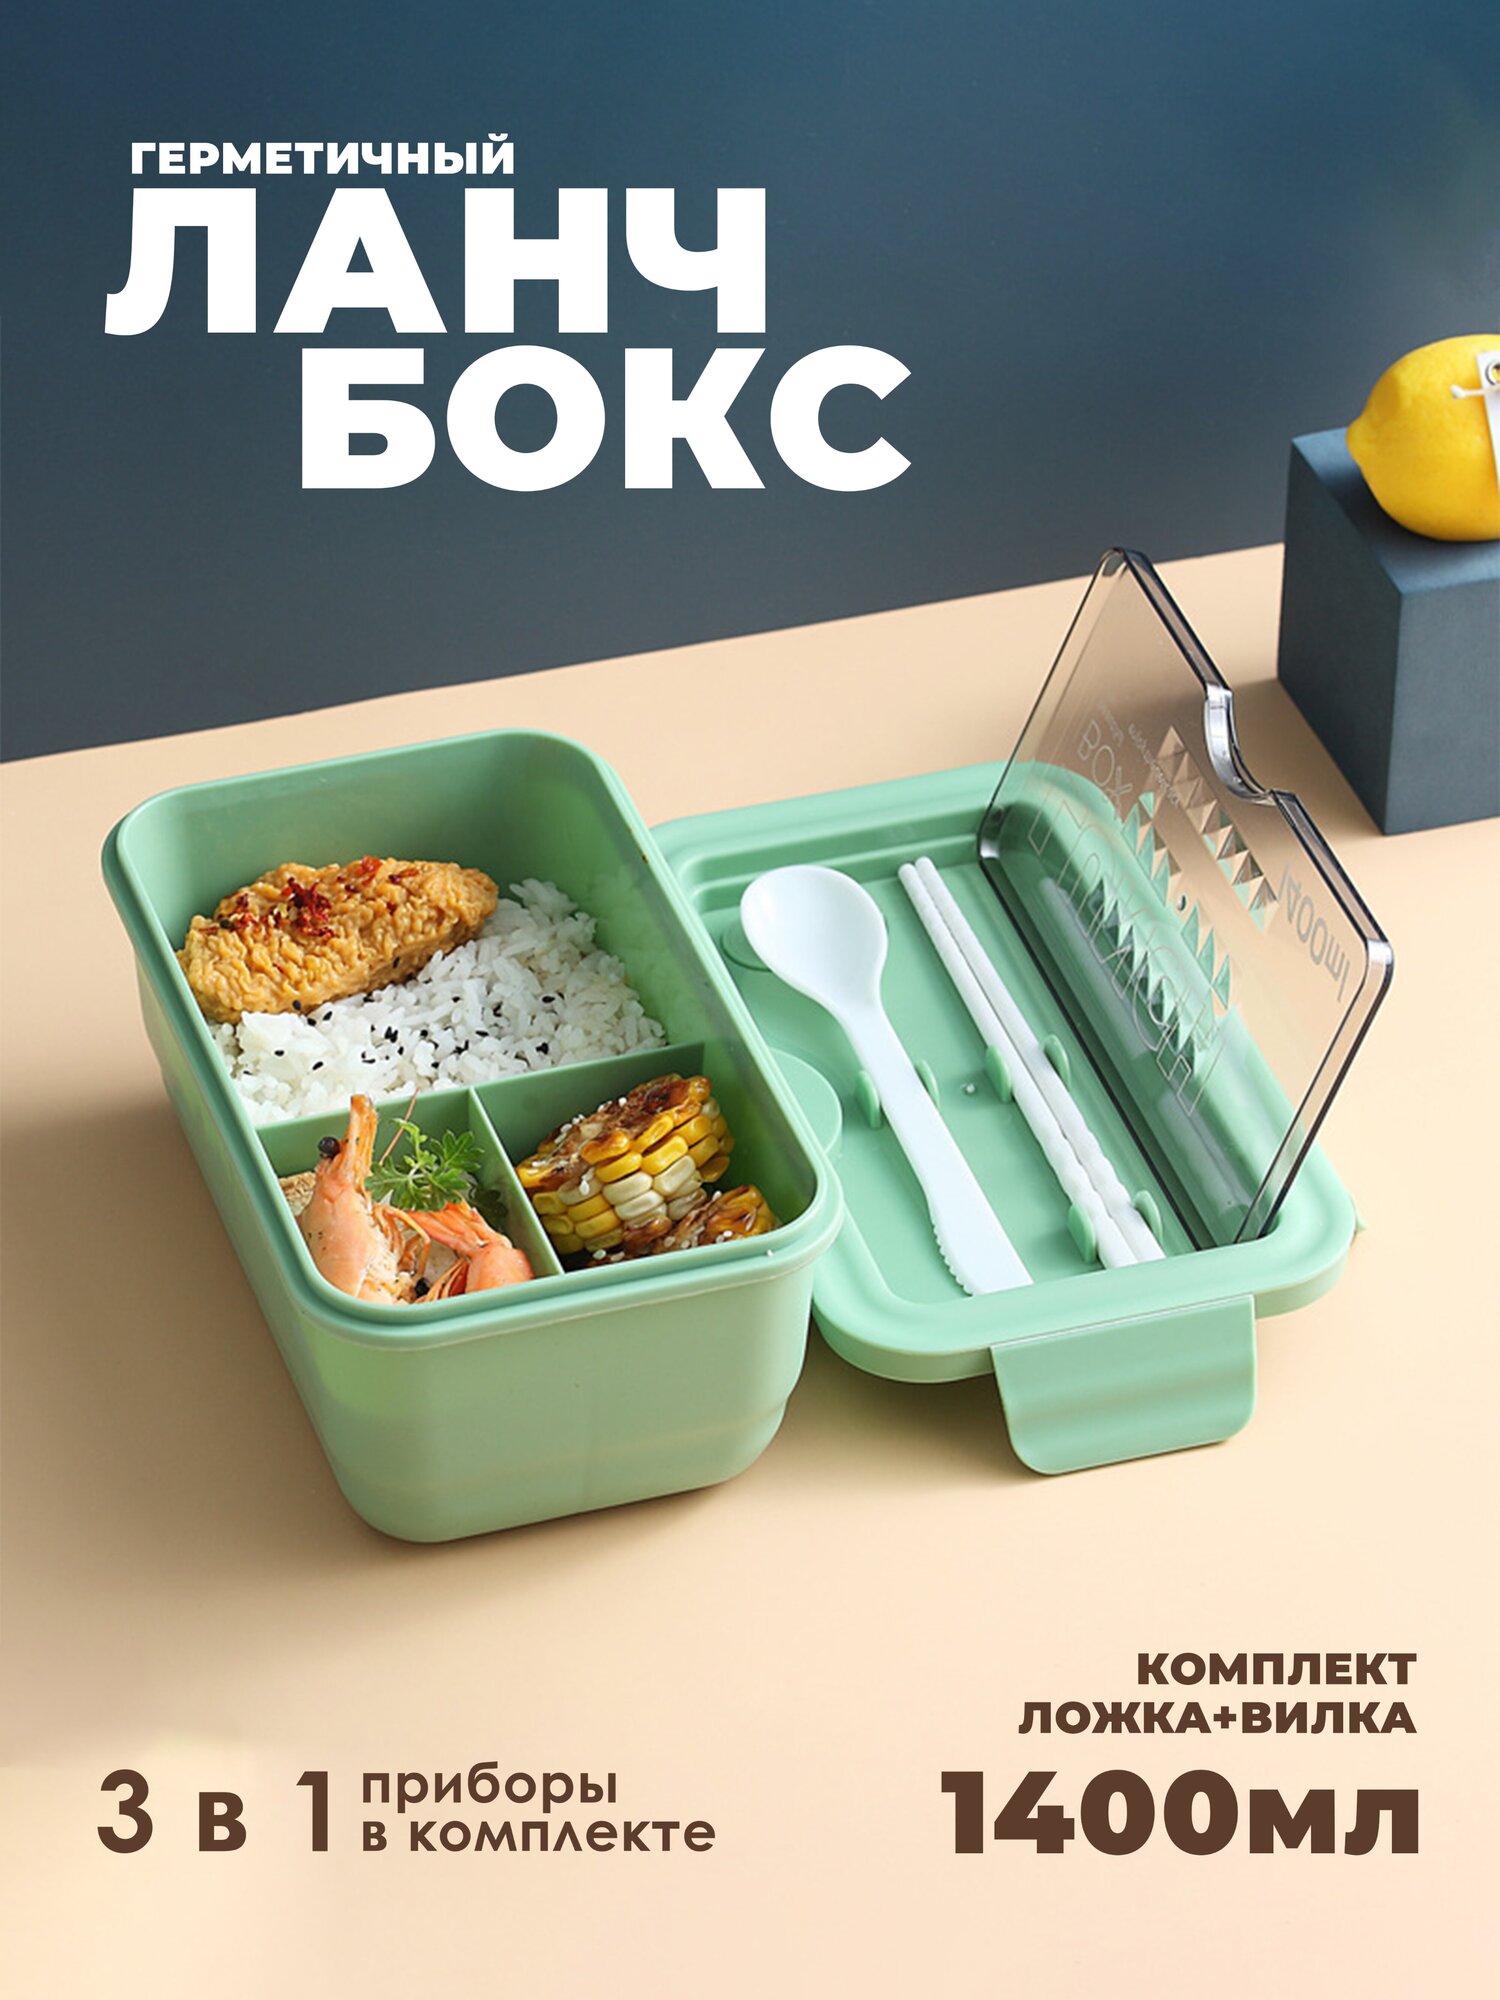 Bofos/Ланч бокс для еды/приборами/отделениями/контейнер для продуктов